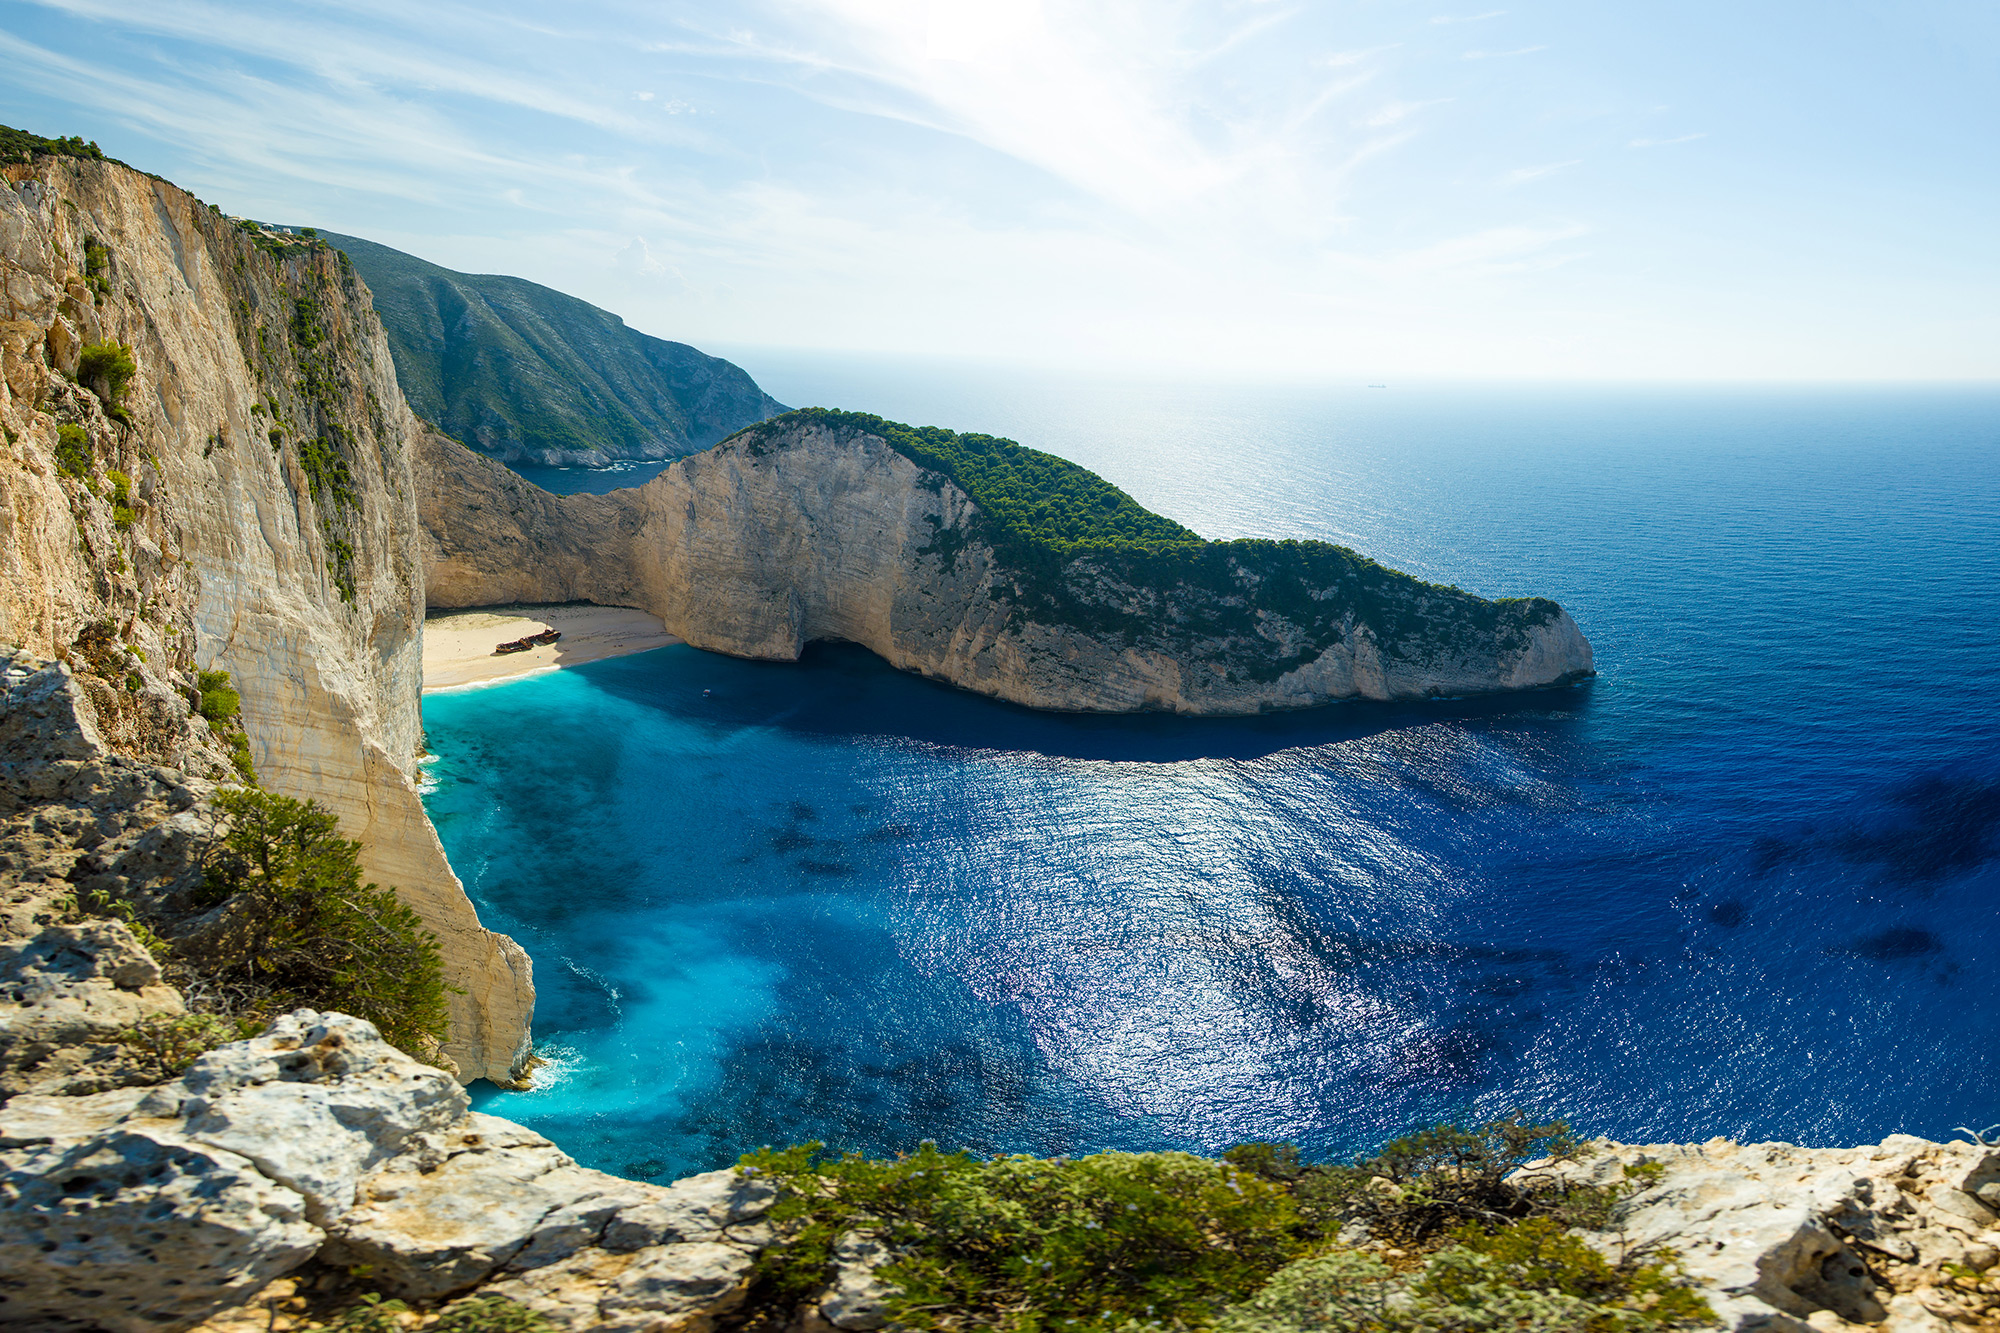 Отдых в Греции 2021: лучшие пляжи и правила въезда.Вокруг Света. Украина